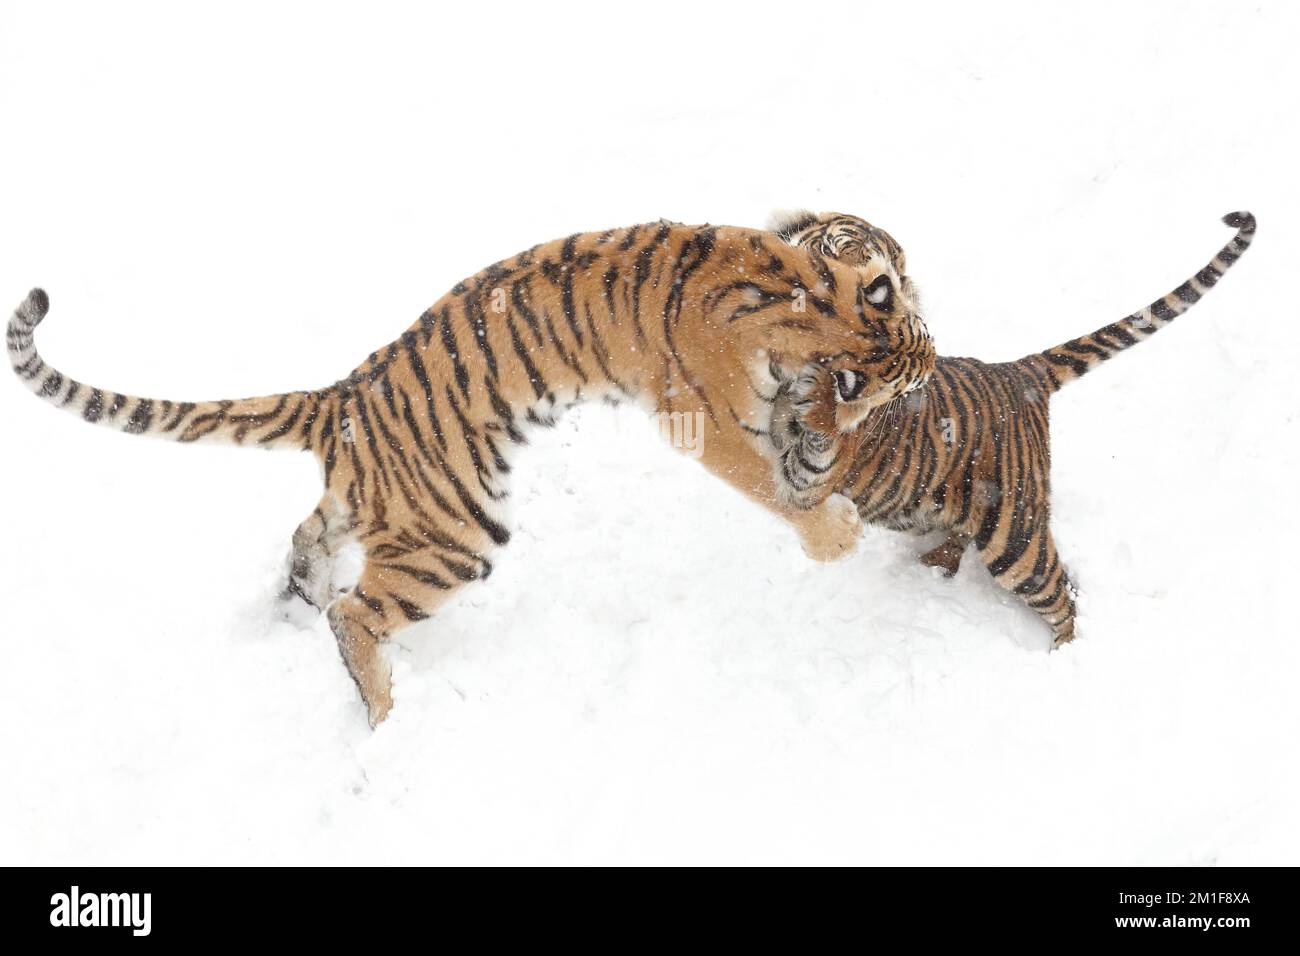 Attaque de neige. Sumatran et Amur Tigers jouent pendant un week-end enneigé à Dudley Zoological Gardens, Angleterre.Dudley Zoo, Royaume-Uni: DES images LUDIQUES montrent un tigre s Banque D'Images